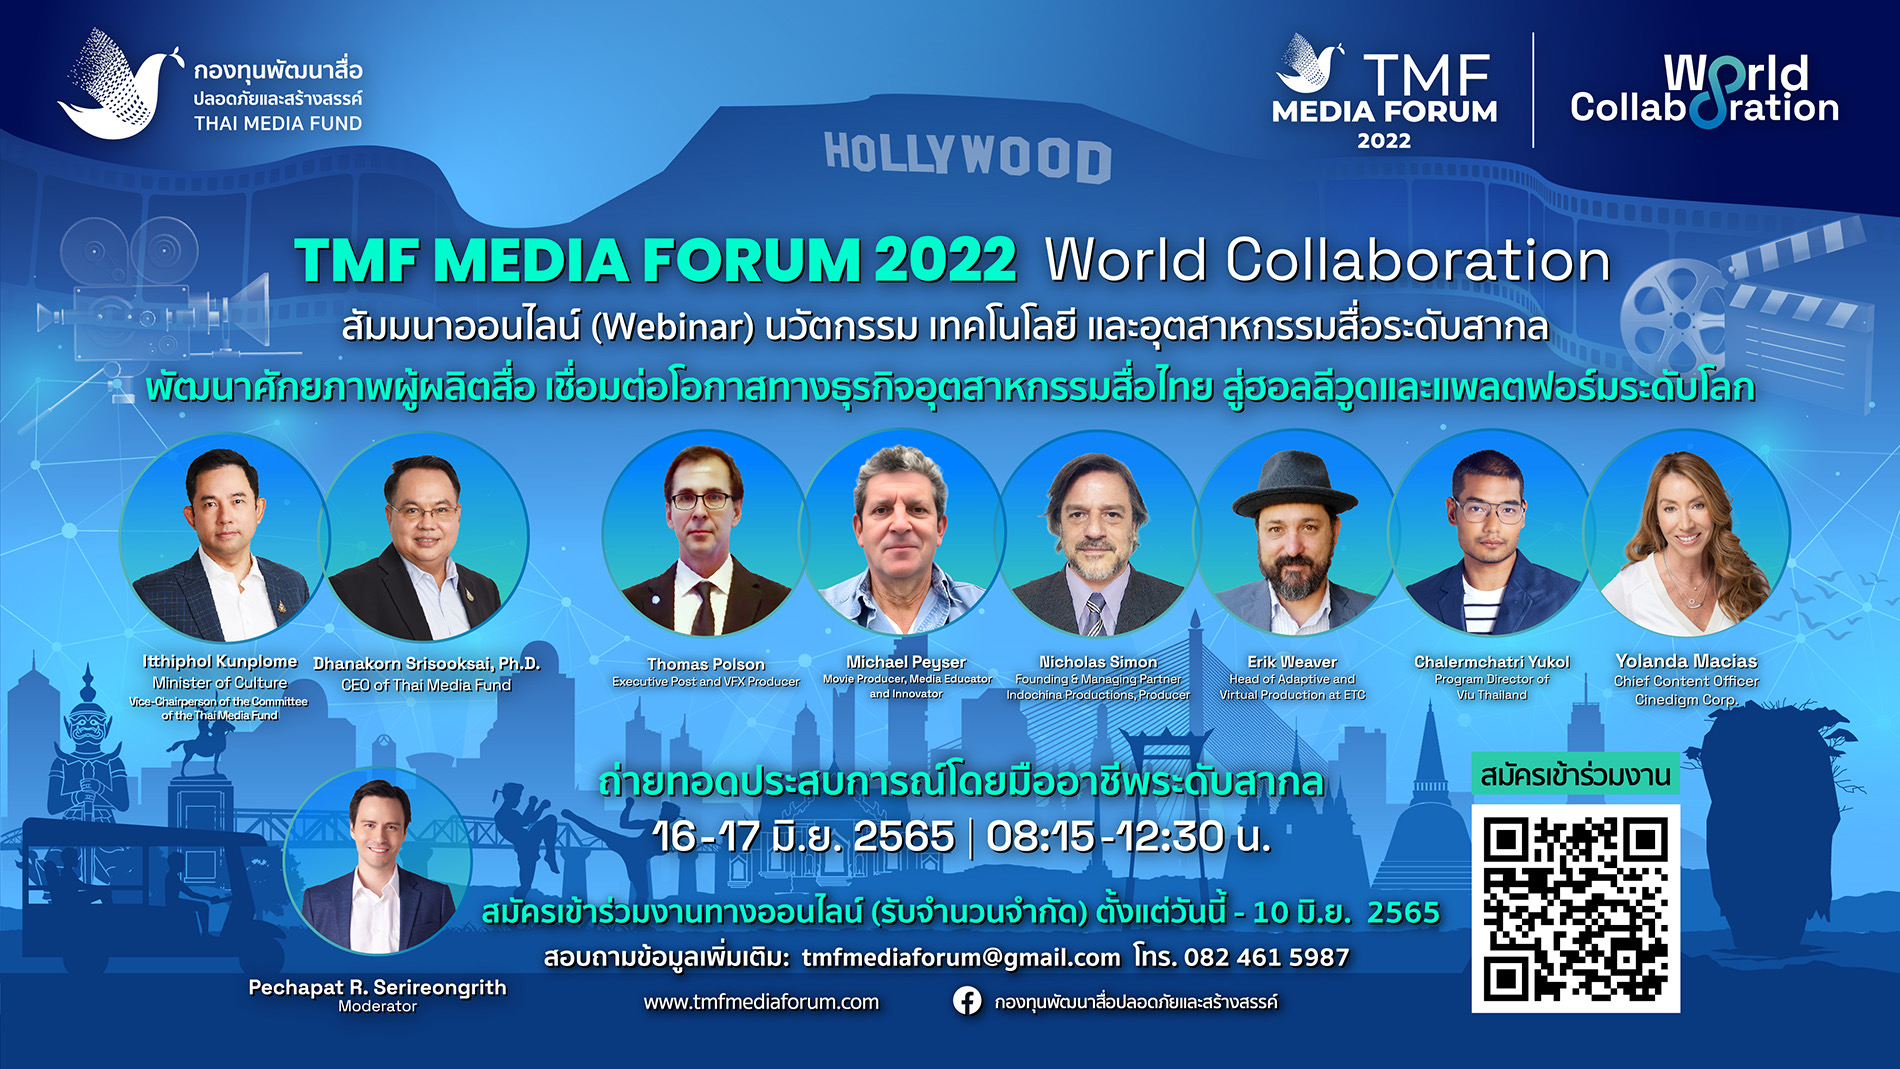 “กองทุนสื่อ”  จัดงานสัมมนาออนไลน์(webinar) ระดับโลกครั้งแรกในไทย TMF Media Forum 2022 : World Collaboration พัฒนาศักยภาพผู้ผลิตสื่อ โอกาสทางธุรกิจอุตสาหกรรมสื่อไทยสู่ “ฮอลลีวูด”และแพลตฟอร์มระดับโลก